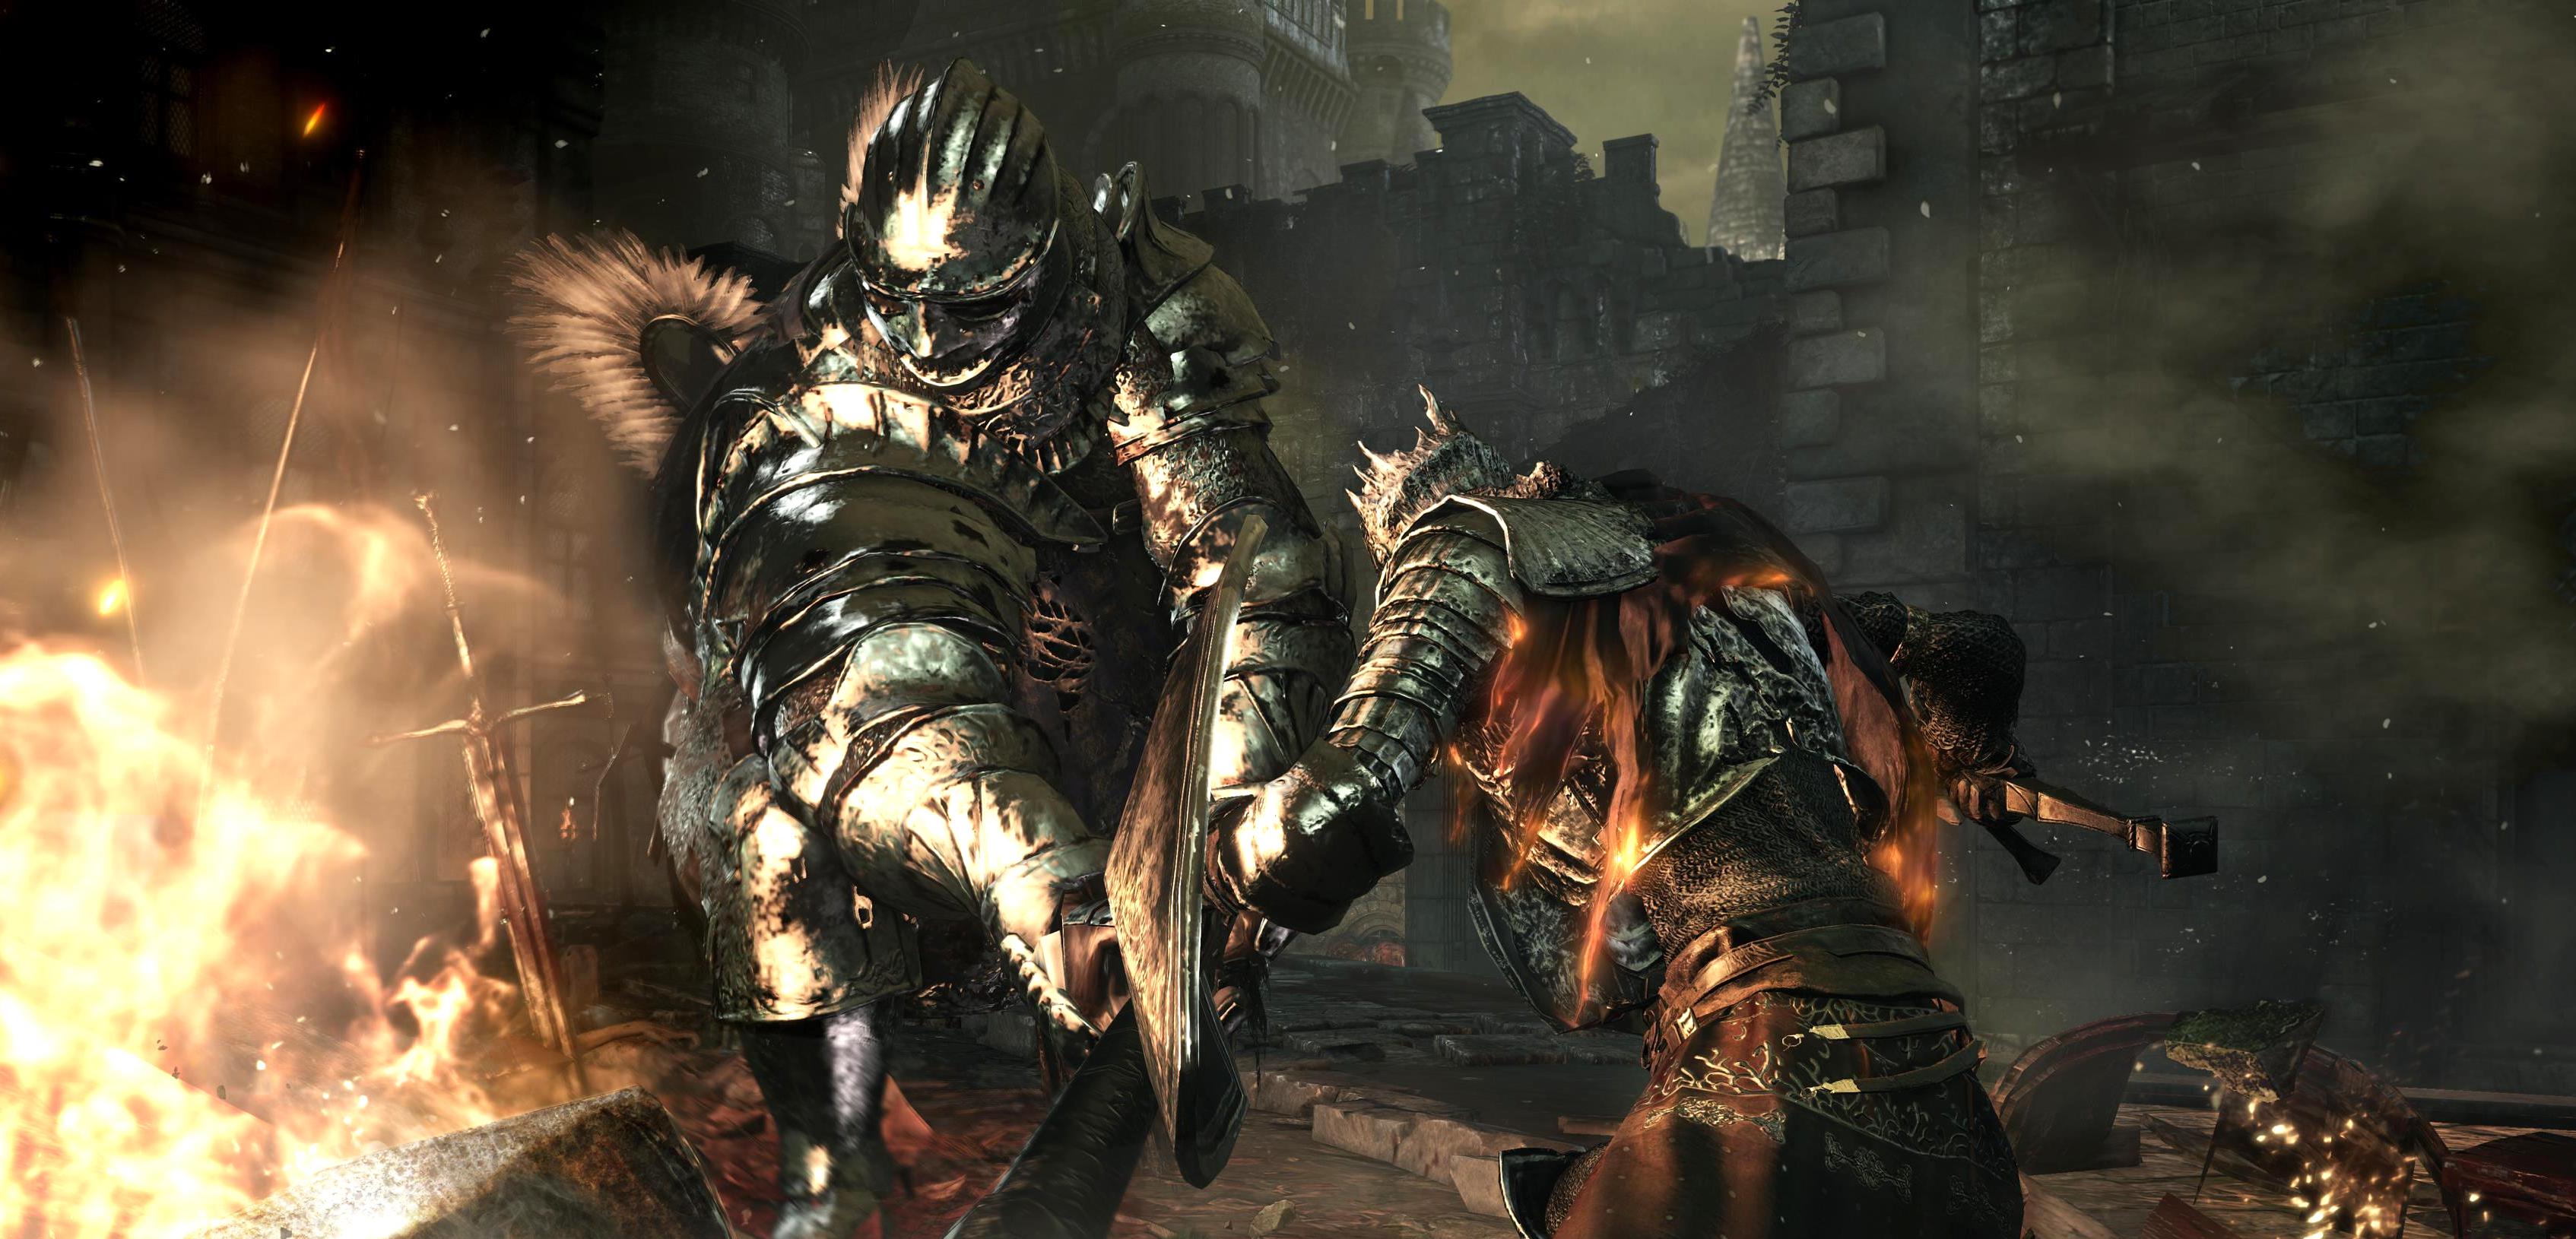 TGS 2015 trwa - zobaczcie gorący gameplay z Dark Souls III; premiera w kwietniu!